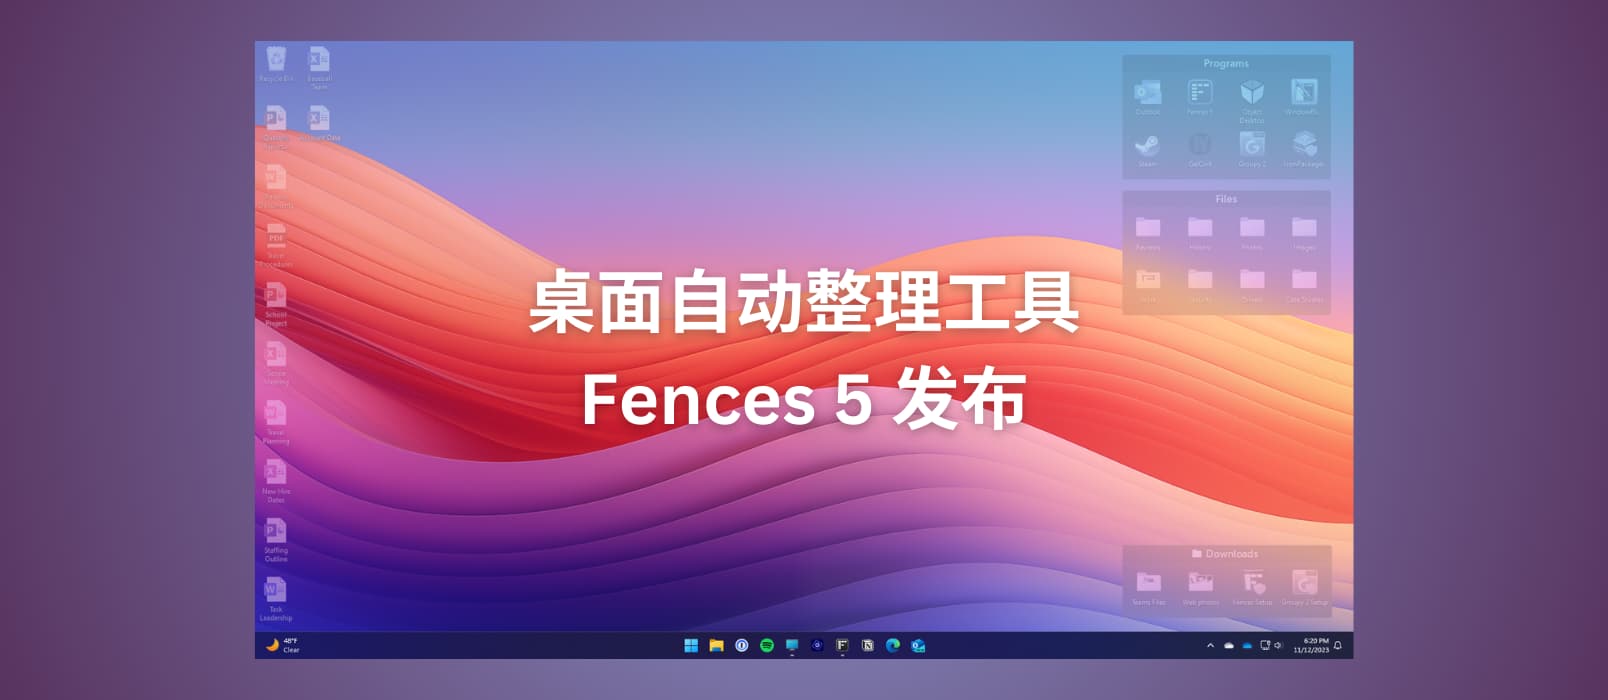 桌面自动整理工具 Fences 5 发布，可将图标融合到壁纸中[Windows] 1